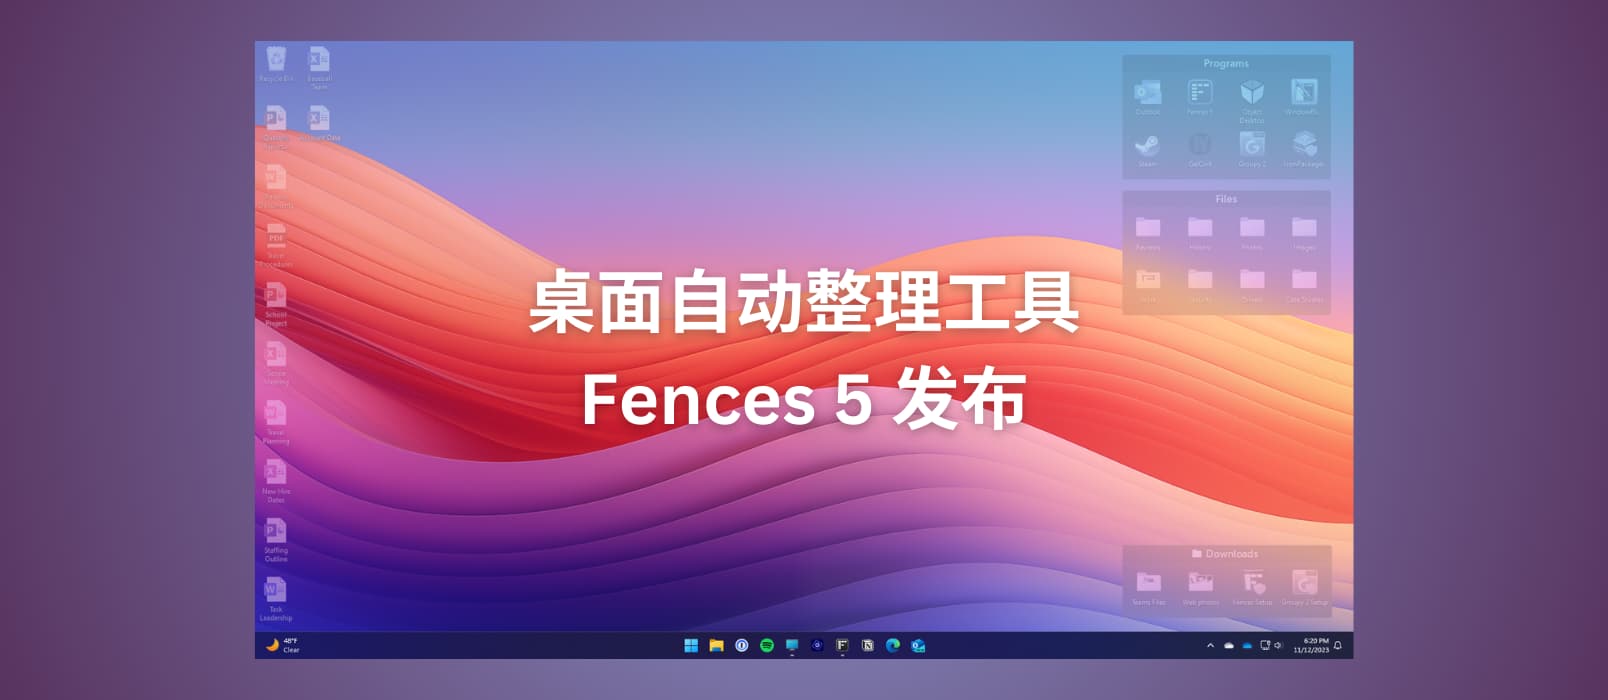 桌面自动整理工具 Fences 5 发布，可将图标融合到壁纸中[Windows] 1